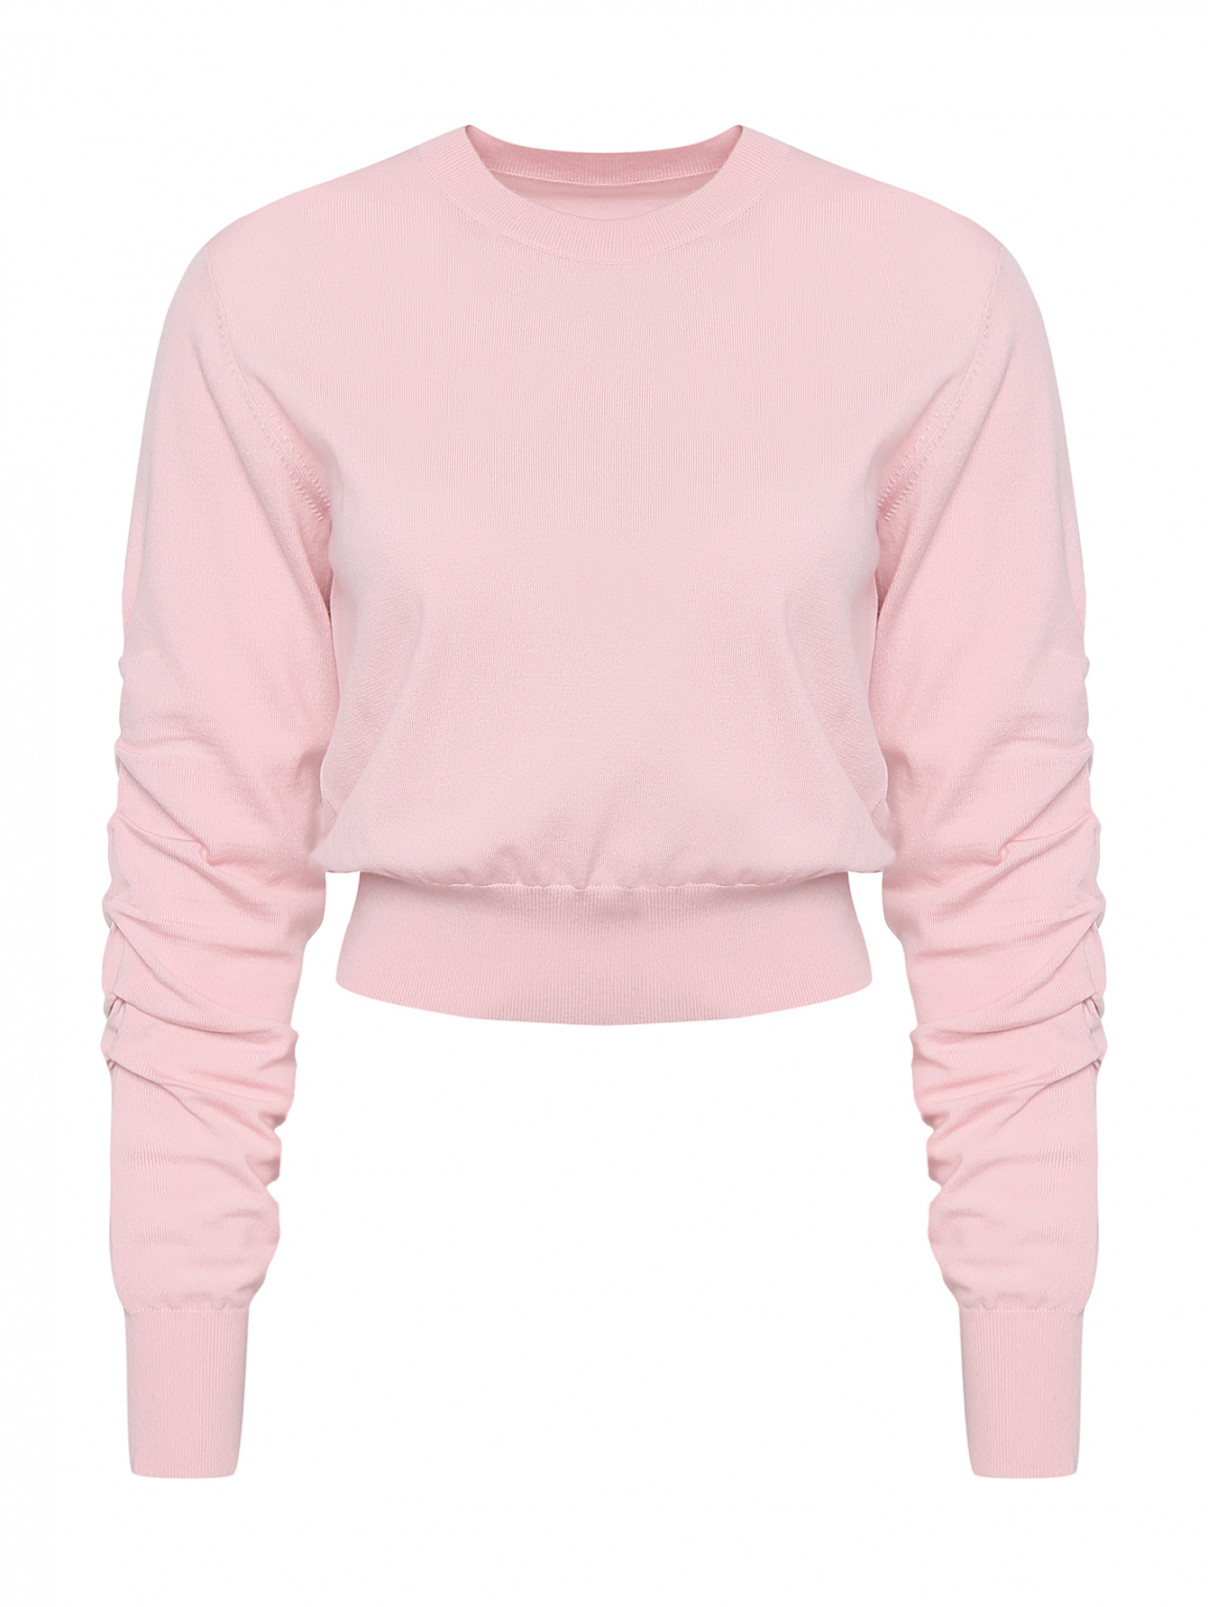 Джемпер из шерсти с круглым воротом и драпировкой на рукавах Mo&Co  –  Общий вид  – Цвет:  Розовый